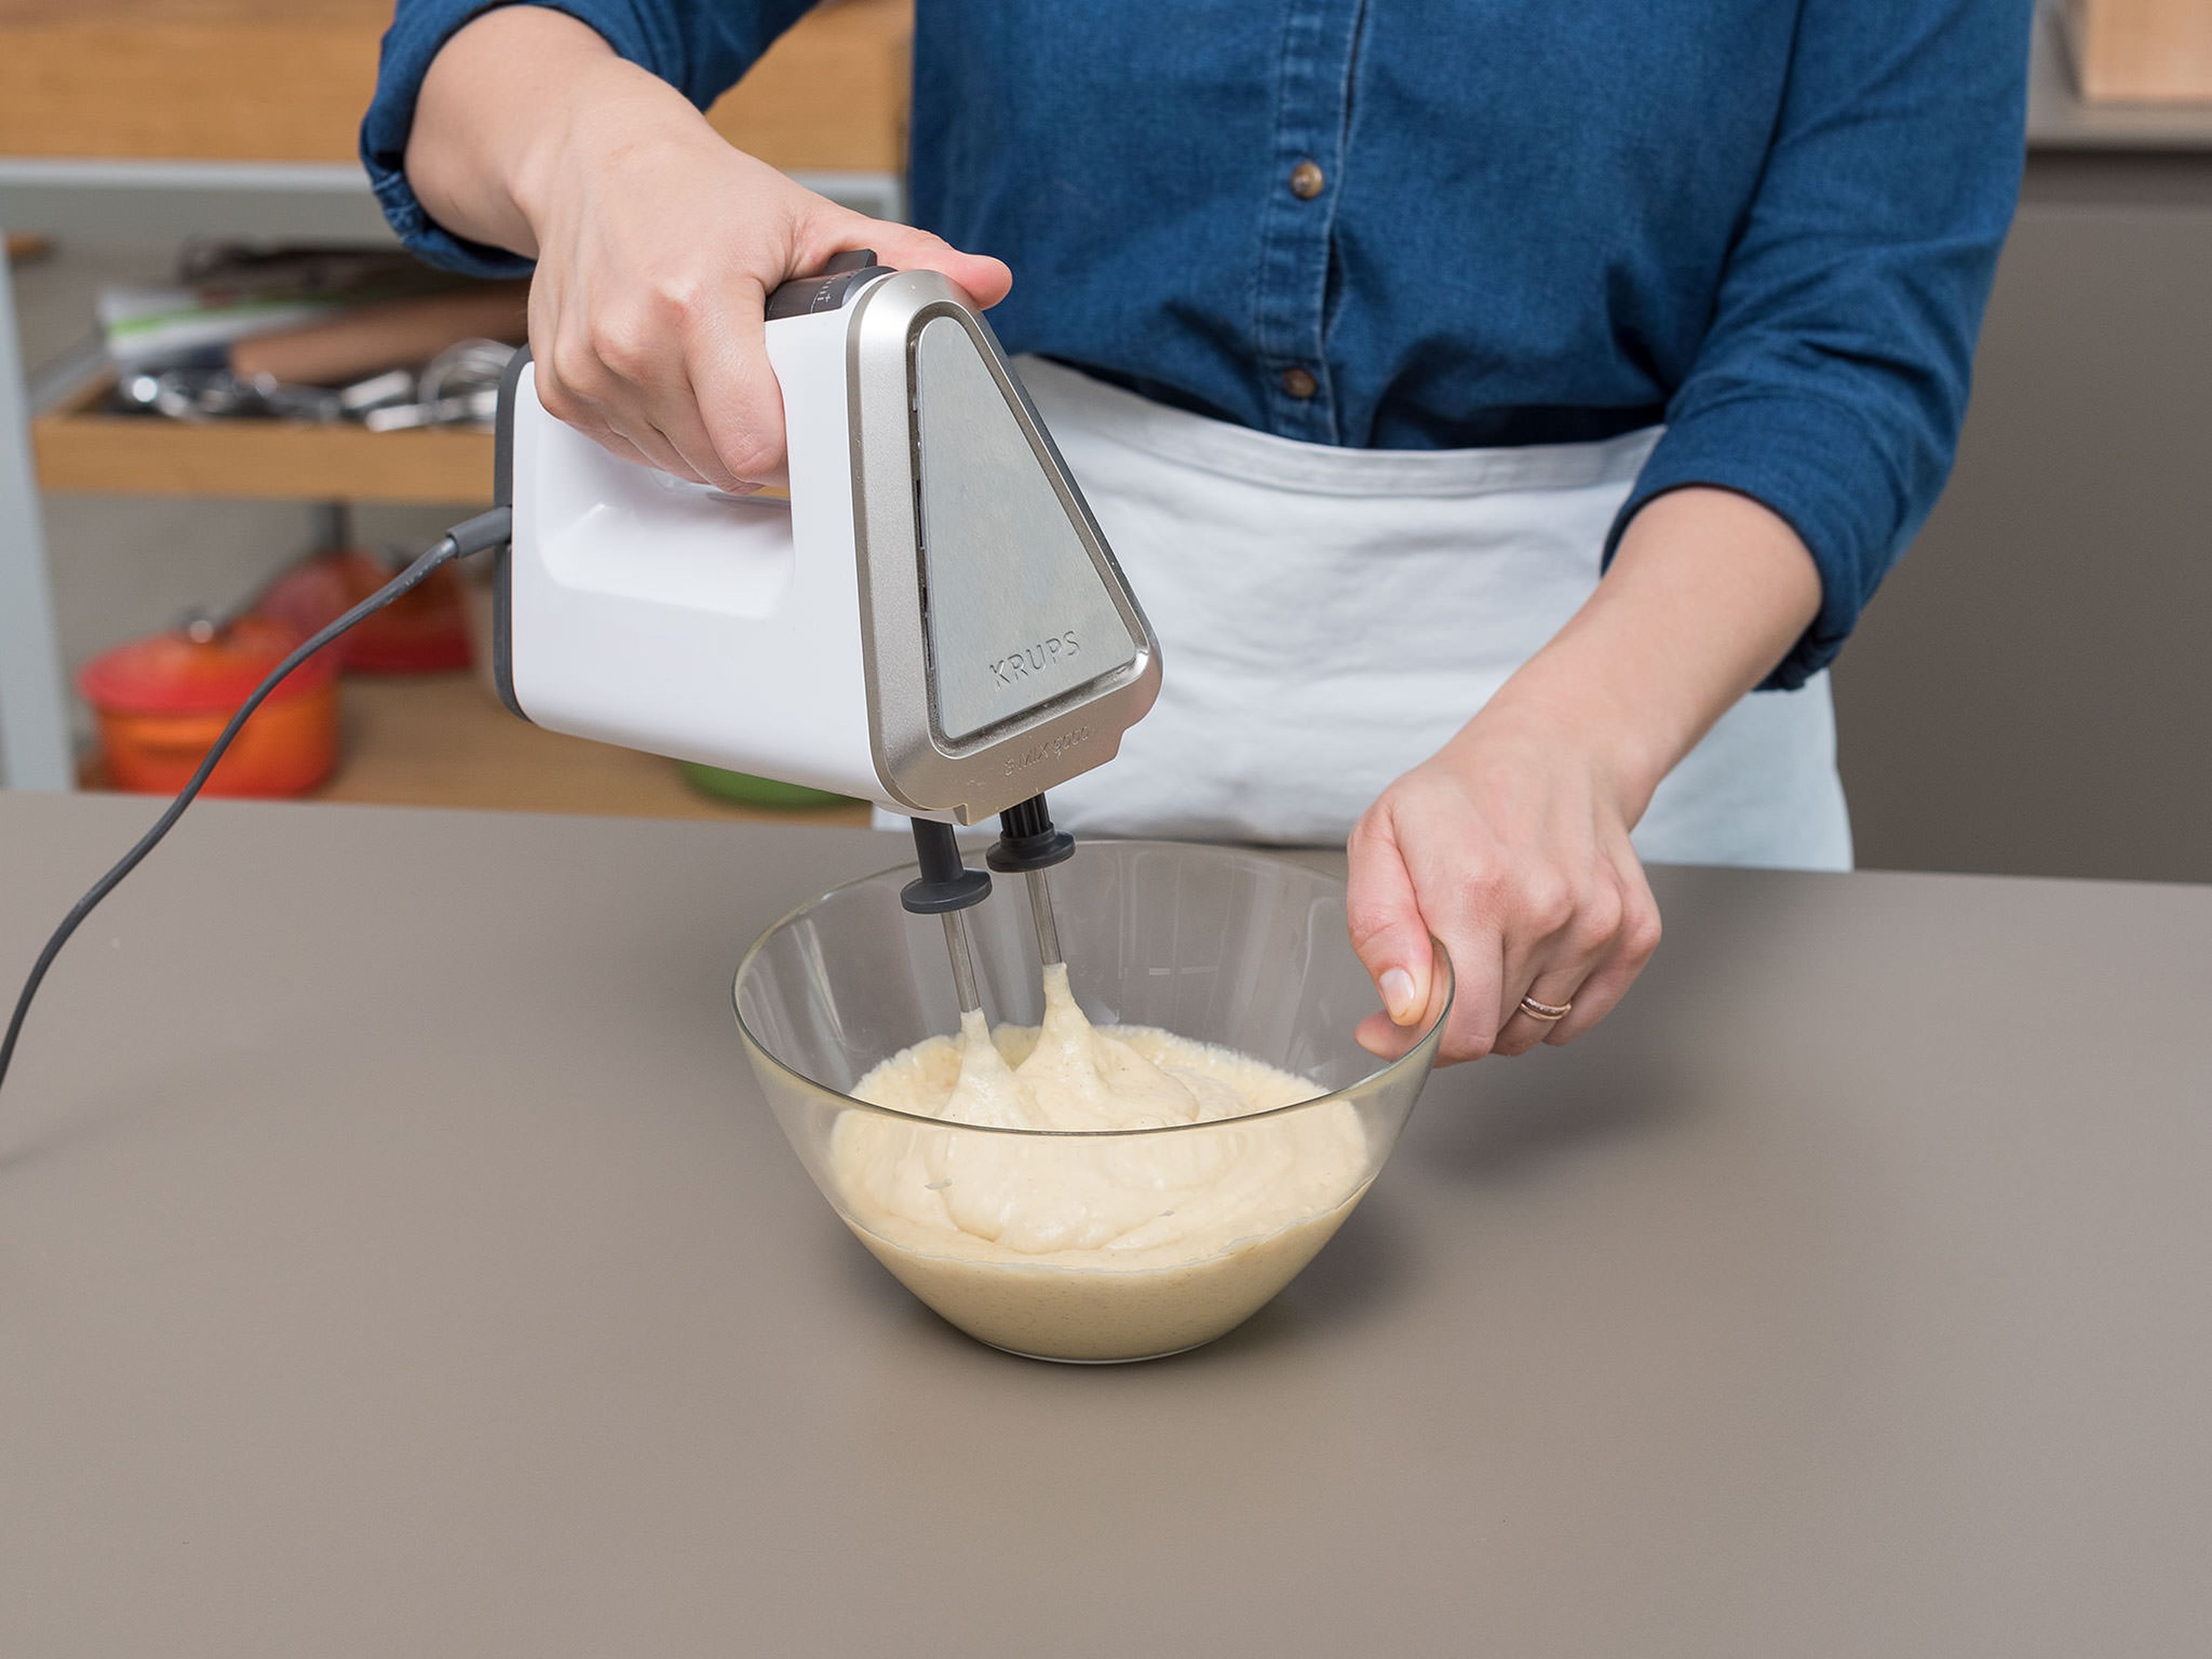 Backofen auf 180°C vorheizen. Für den Kuchenboden Mehl, Zucker, Backpulver und die Hälfte des Vanillezuckers mit einem Handrührgerät in einer Schüssel mixen. Die Butter würfeln und zusammen mit dem Ei in die Schüssel geben. Zu einem glatten Teig mixen.